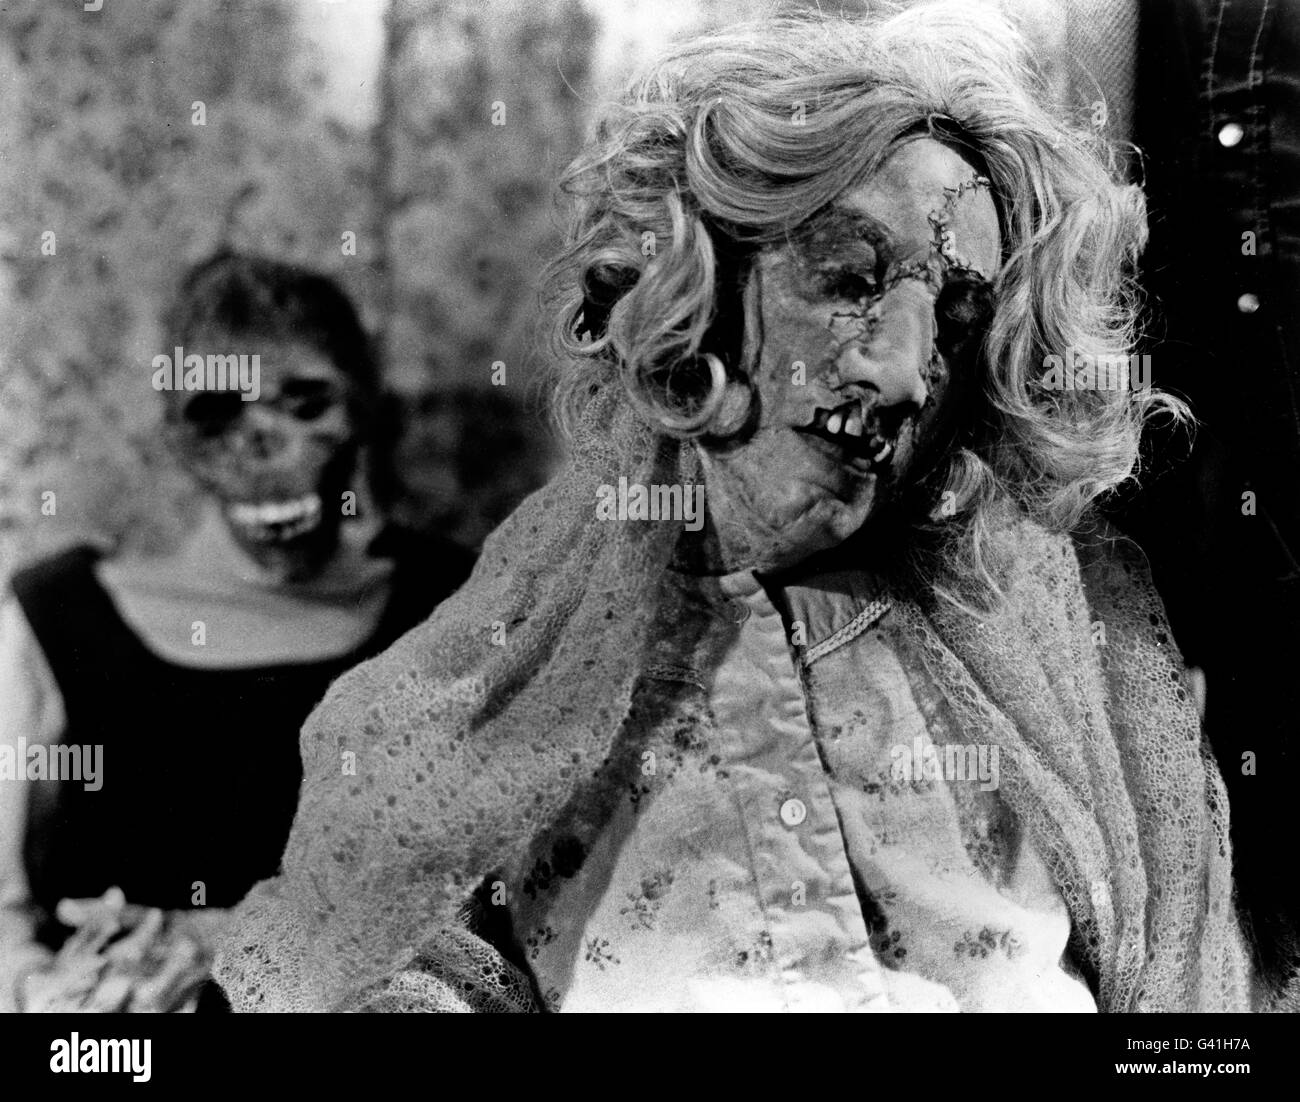 Squilibrato, aka: Besessen, USA 1975, Regie: Jeff Gillen, Alan Ormsby, Szenenfoto Foto Stock